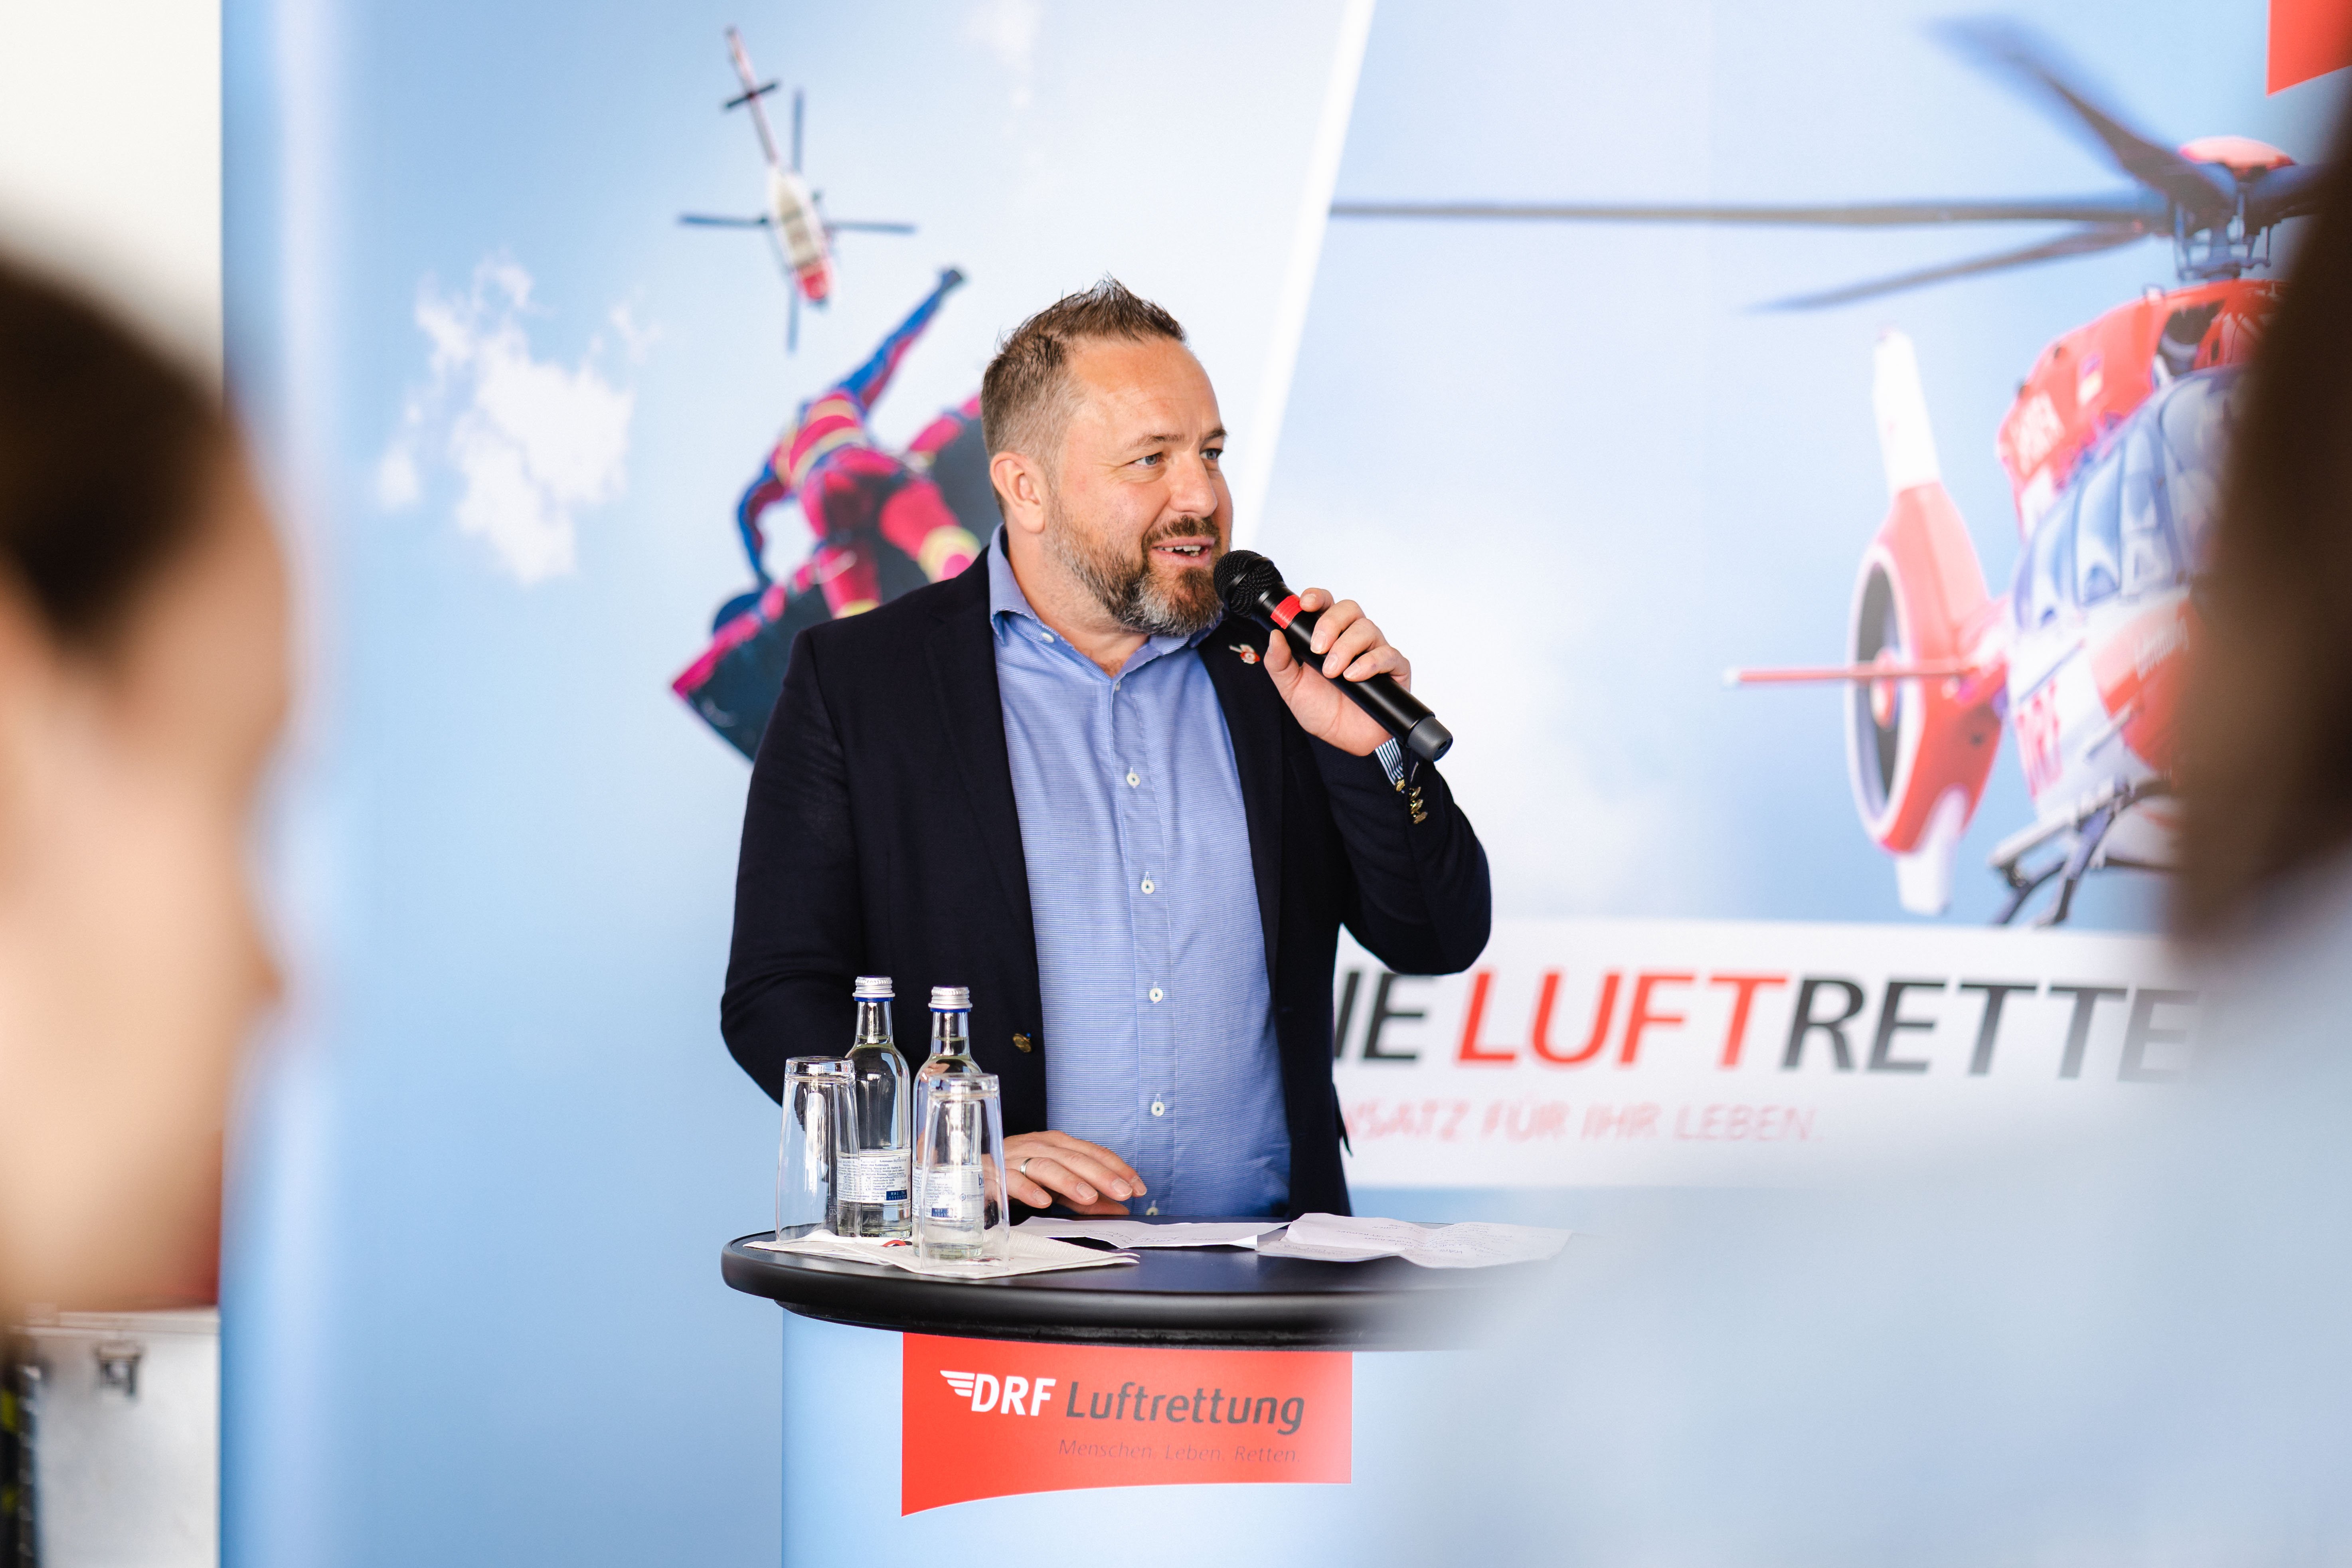 Der Vorstand Luftrettung der DRF Luftrettung Wolfgang Karlstetter bei seiner Ansprache in Regensburg